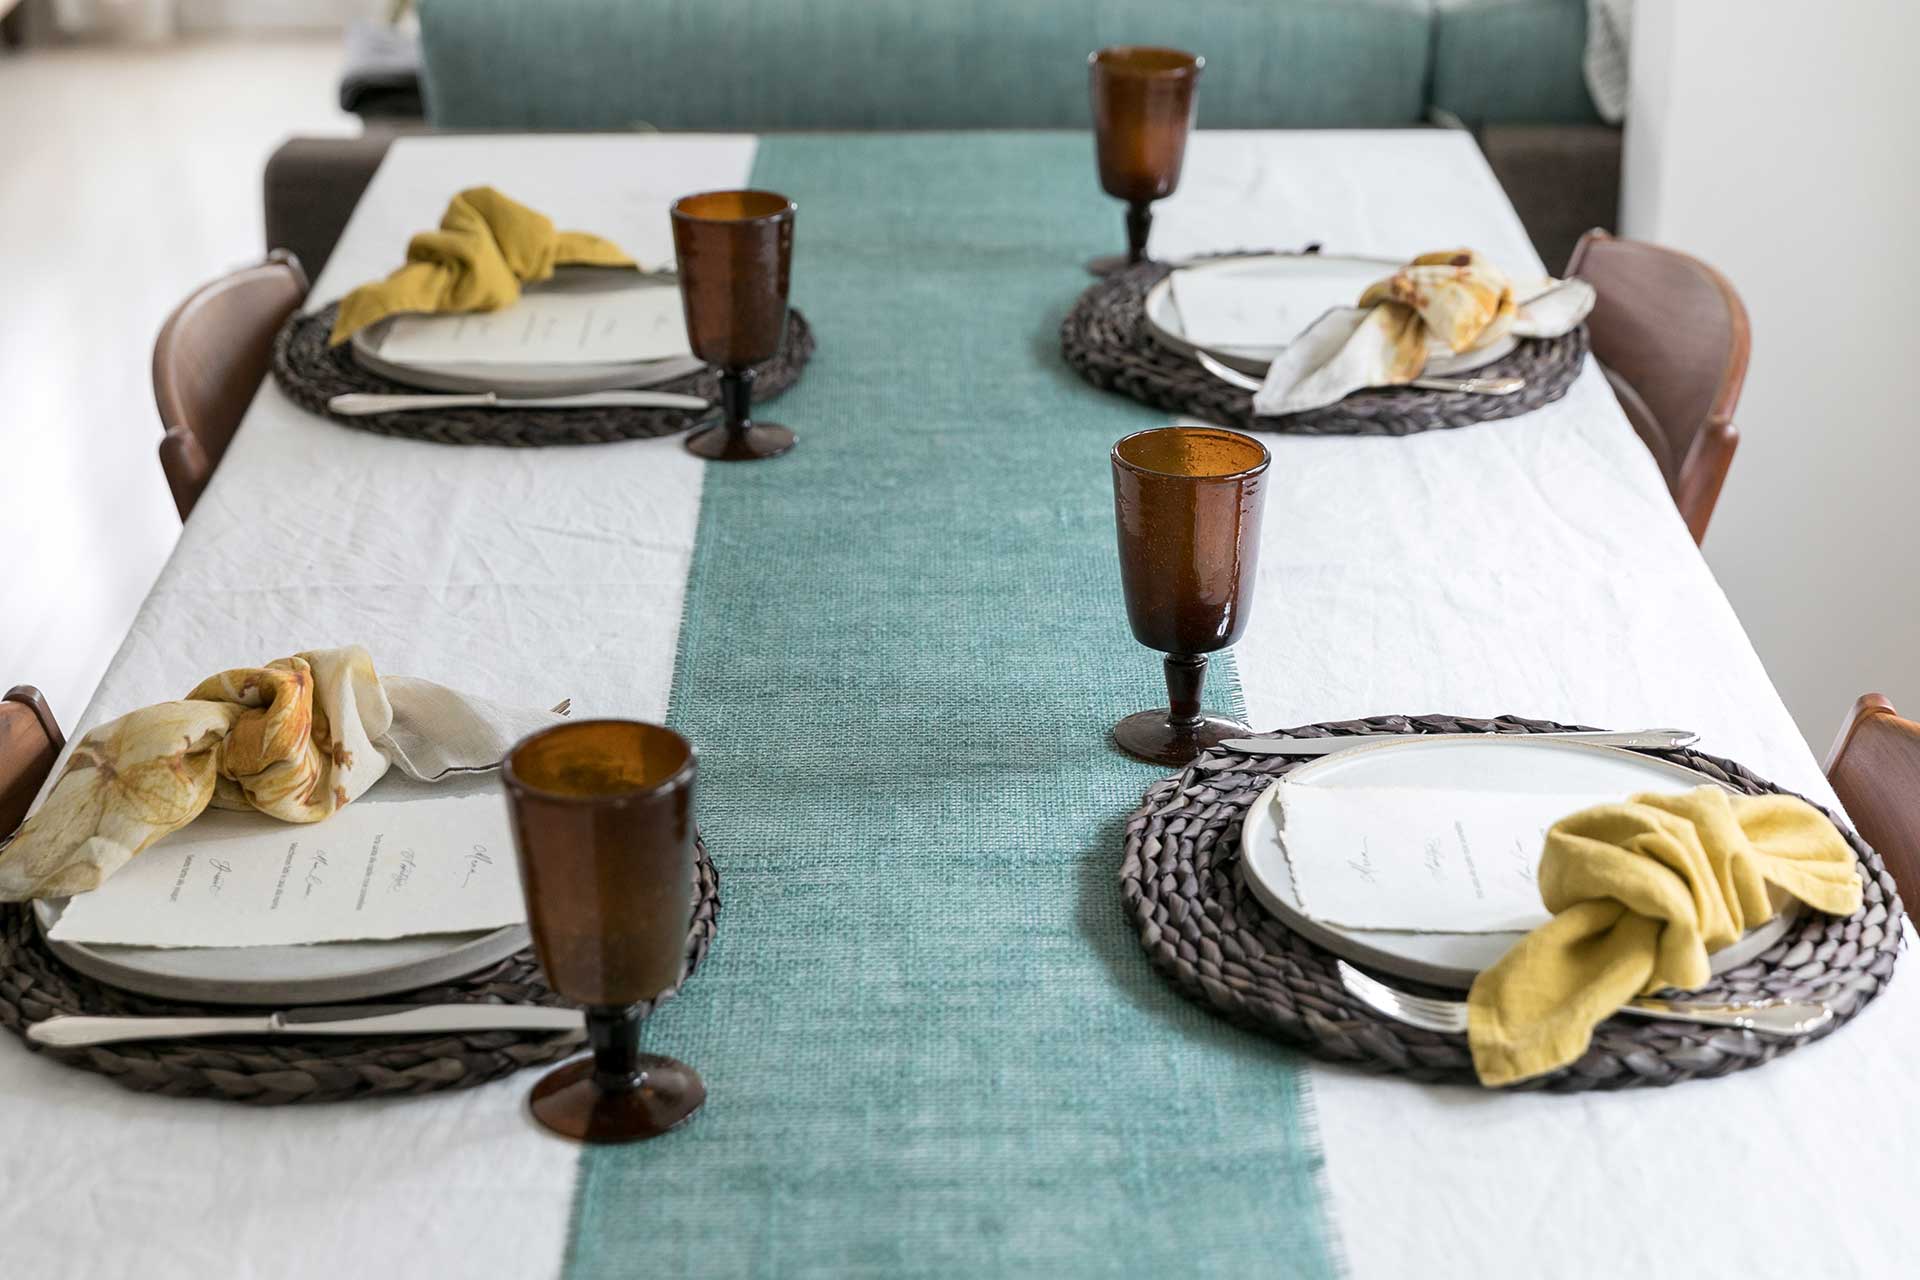 まず、白のリネンのテーブルクロスに、素材感のあるグリーンのテーブルランナーを敷き、４人分のお皿とカトラリーをセット。